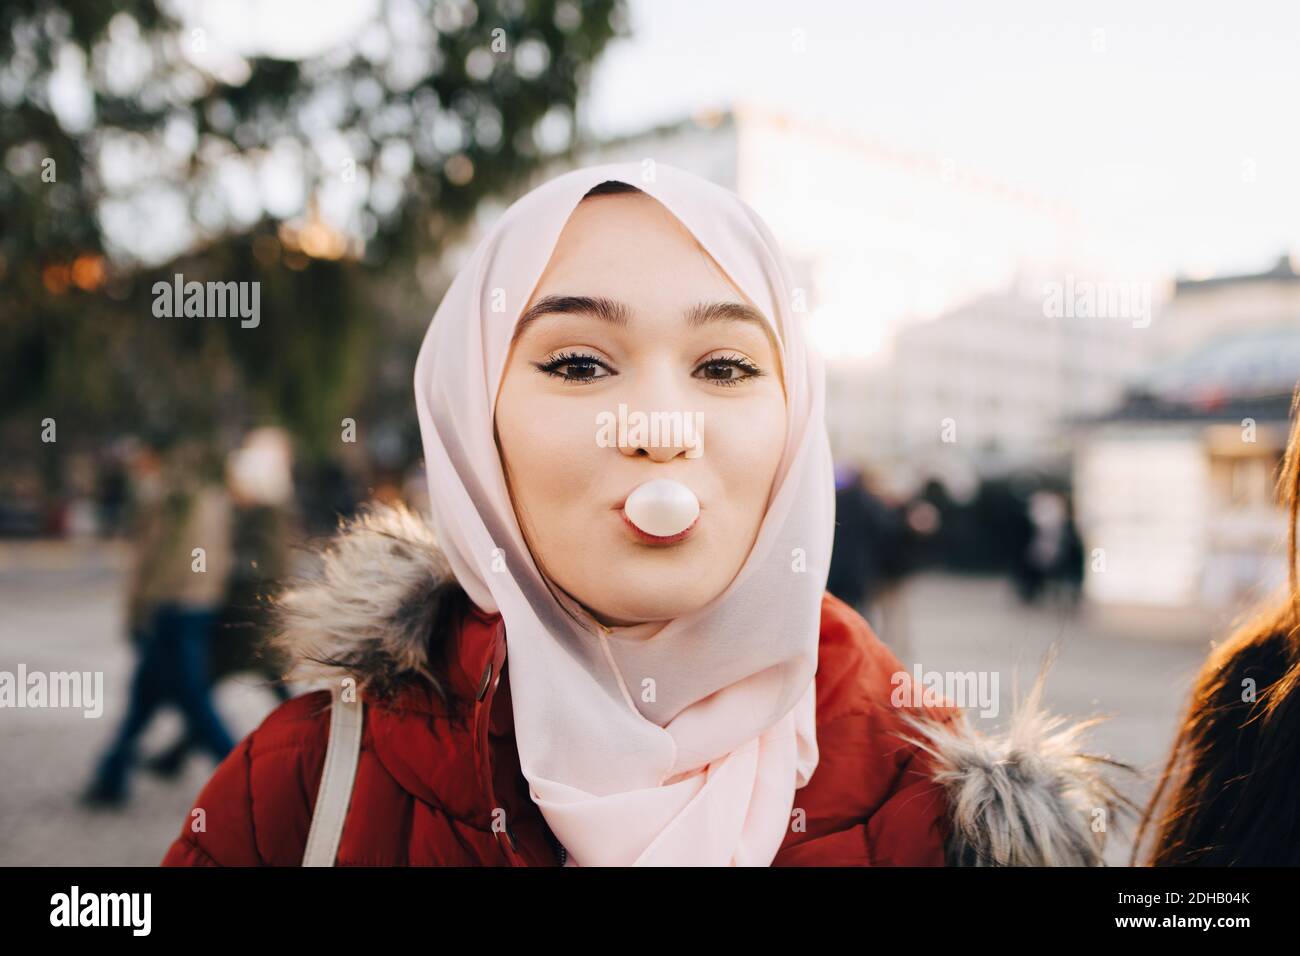 Portrait einer jungen muslimischen Frau, die in der Stadt Kaugummi bläst Stockfoto